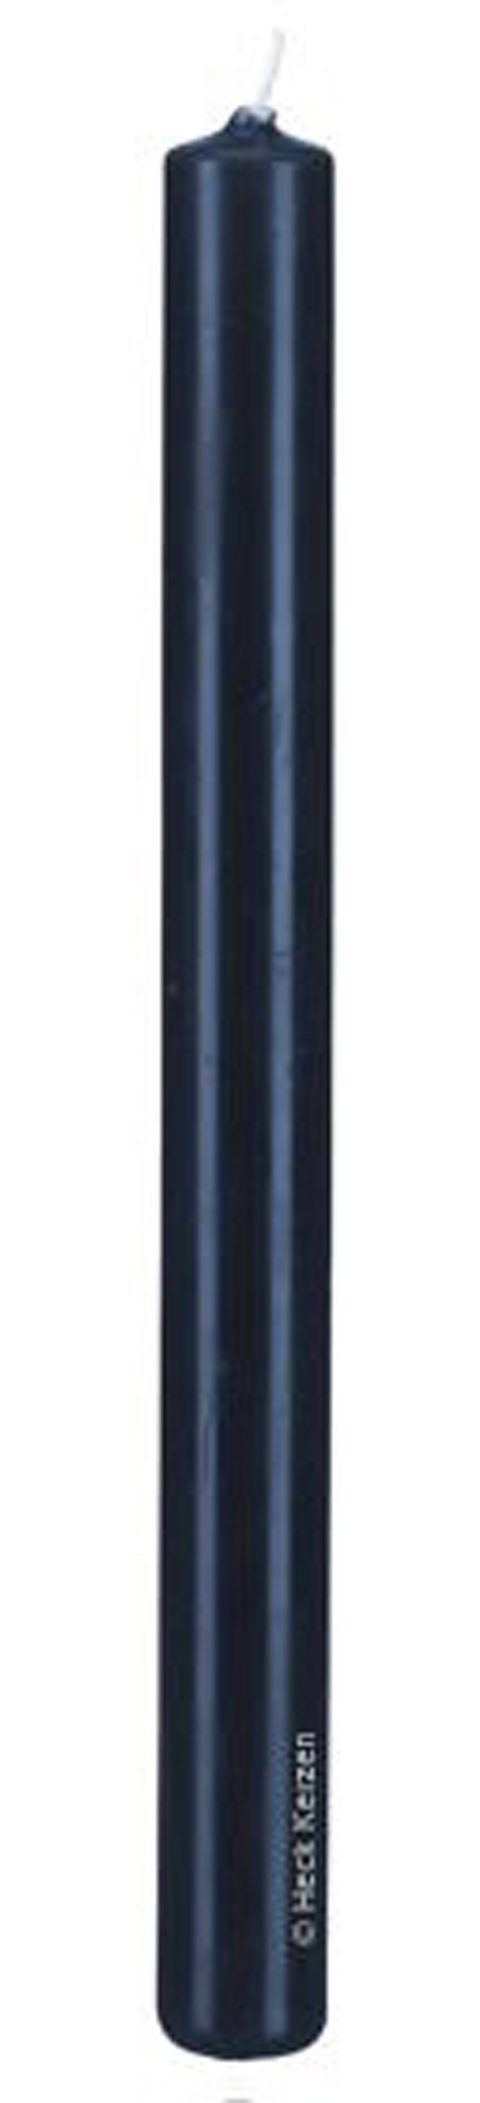 Kopschitz Kerzen Tafelkerze Stabkerzen Nachtblau Dunkelblau 250 x Ø 30 mm, 12